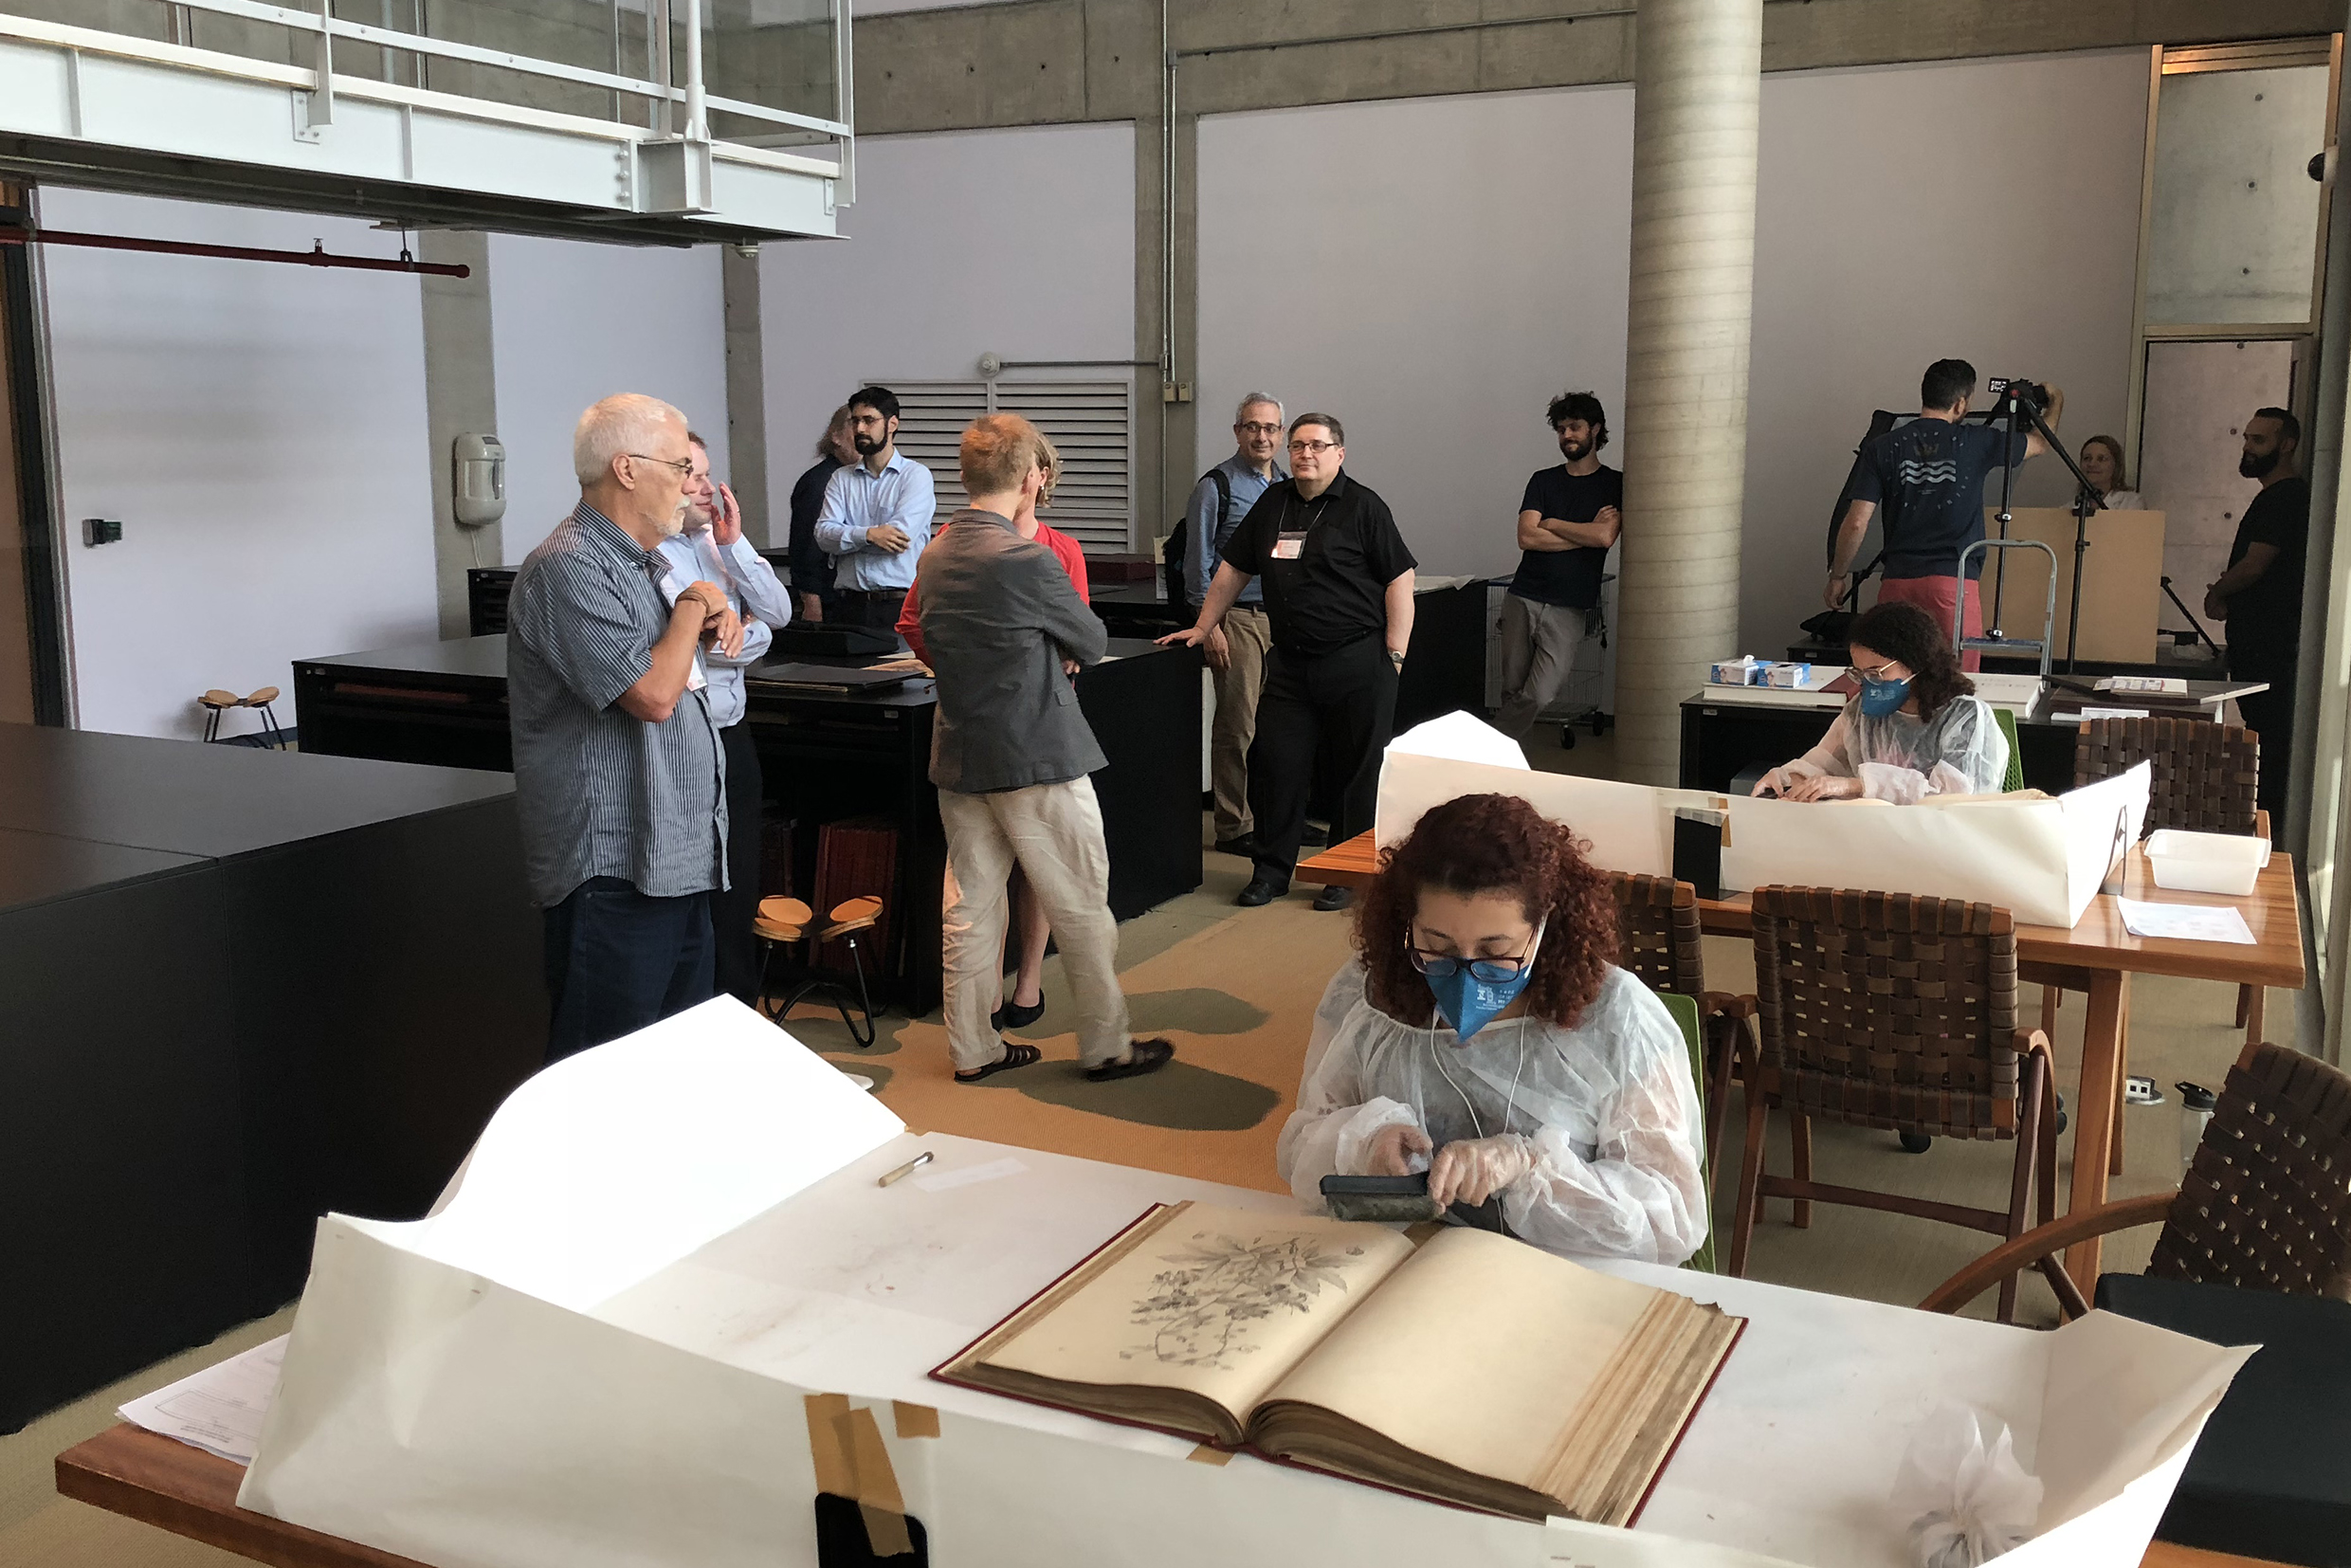 Participantes observam funcionárias da Biblioteca Brasiliana Guita e José Mindlin realizando trabalho de conservação das obras